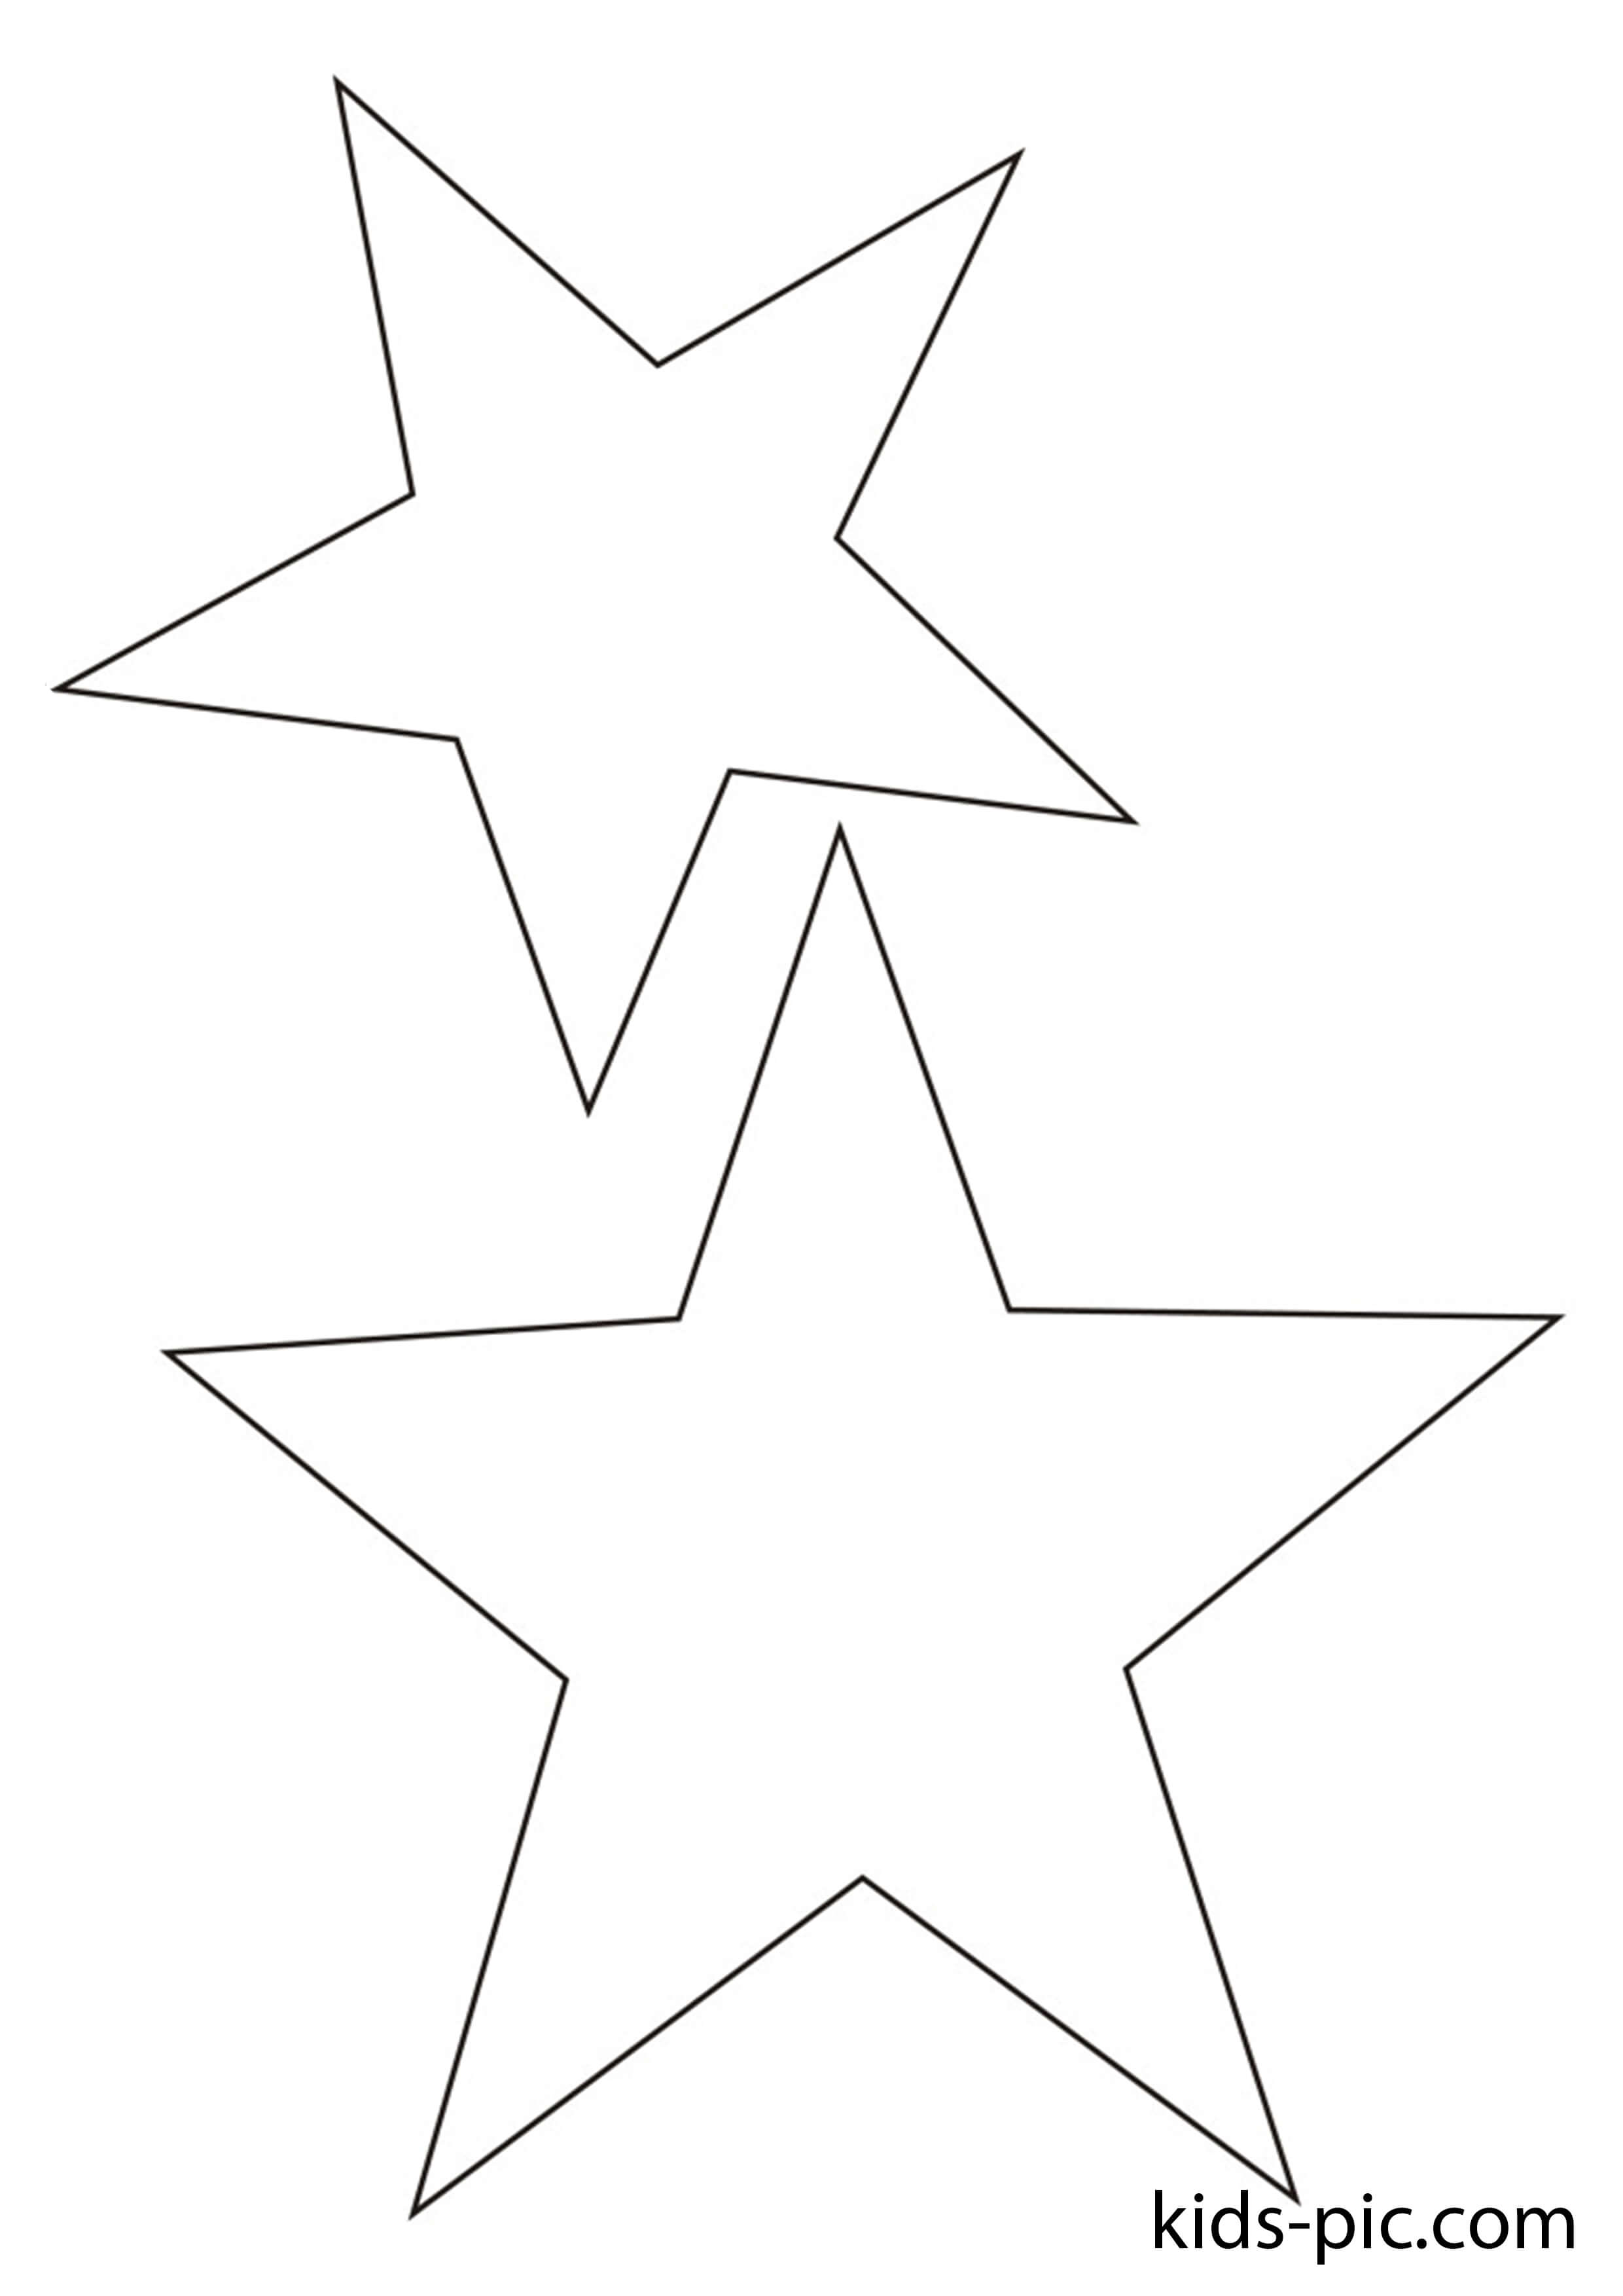 Звезда шаблон для вырезания к 9. Трафарет Звёздочки. Трафарет для вырезания звезд. Звёздочки трафареты для вырезания. Контурное изображение звезды.